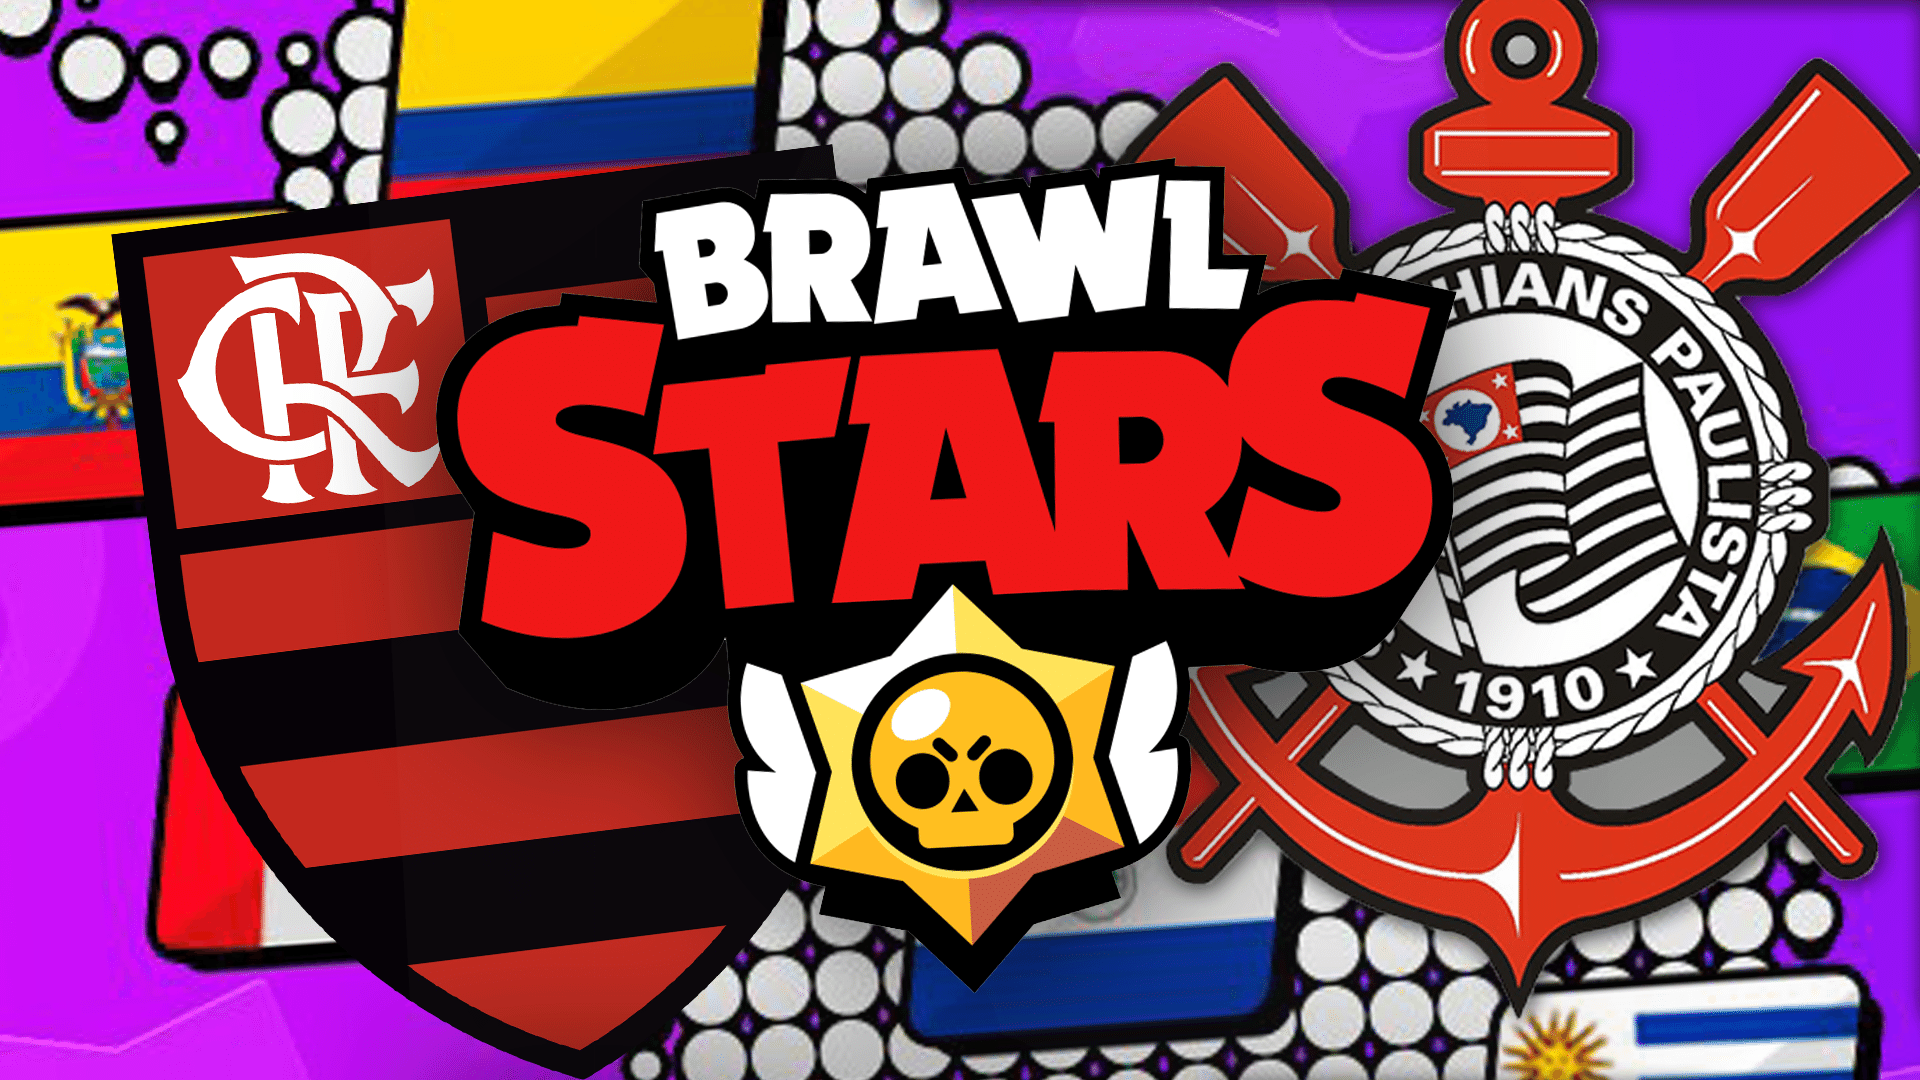 Corinthians E Flamengo Disputam Brawl Stars Master League Veja Times - campeonato de brawl stars regras